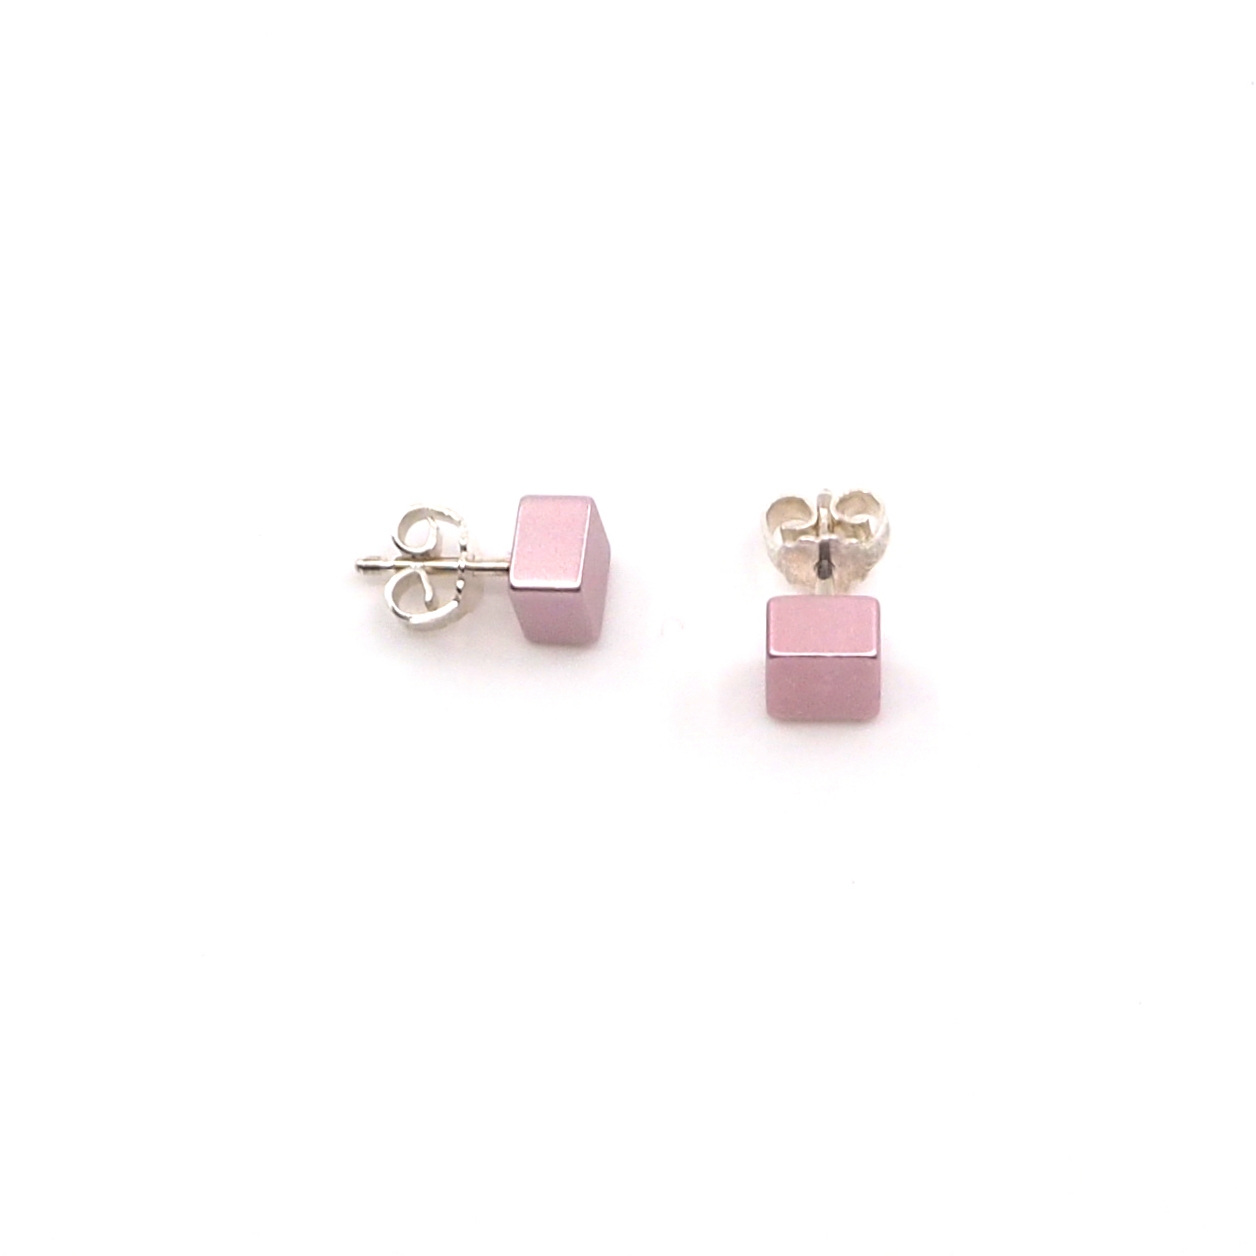 Otracosa sieraden roze oorbellen. Licht roze oorbellen sieraden